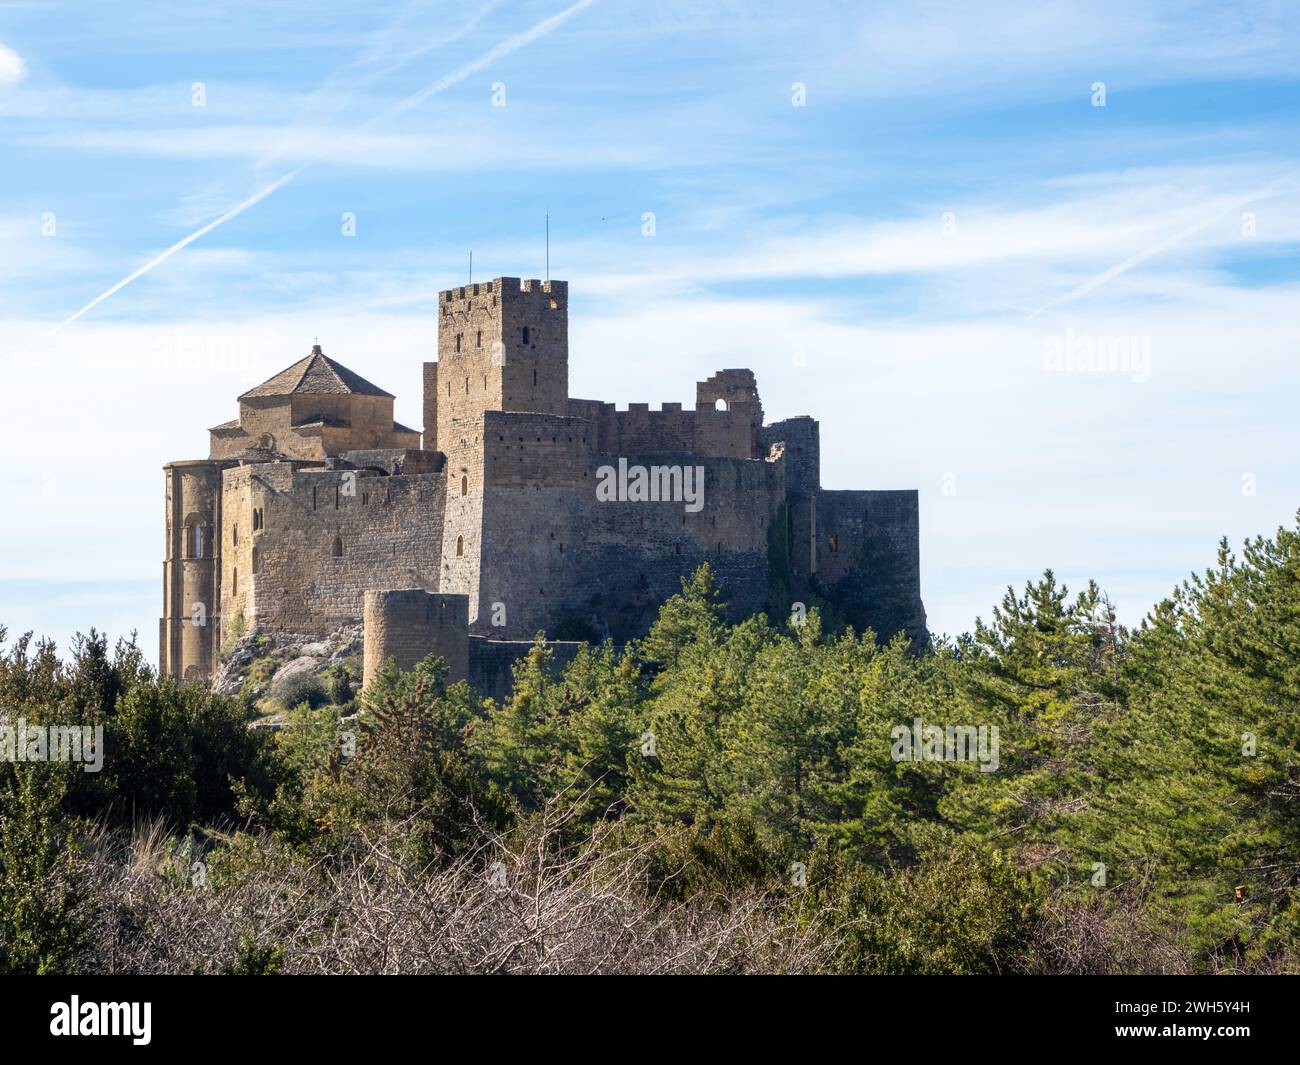 Castello di Loarre fortificazione difensiva romanica medievale romanica Huesca Aragona Spagna uno dei castelli medievali meglio conservati in Spagna Foto Stock